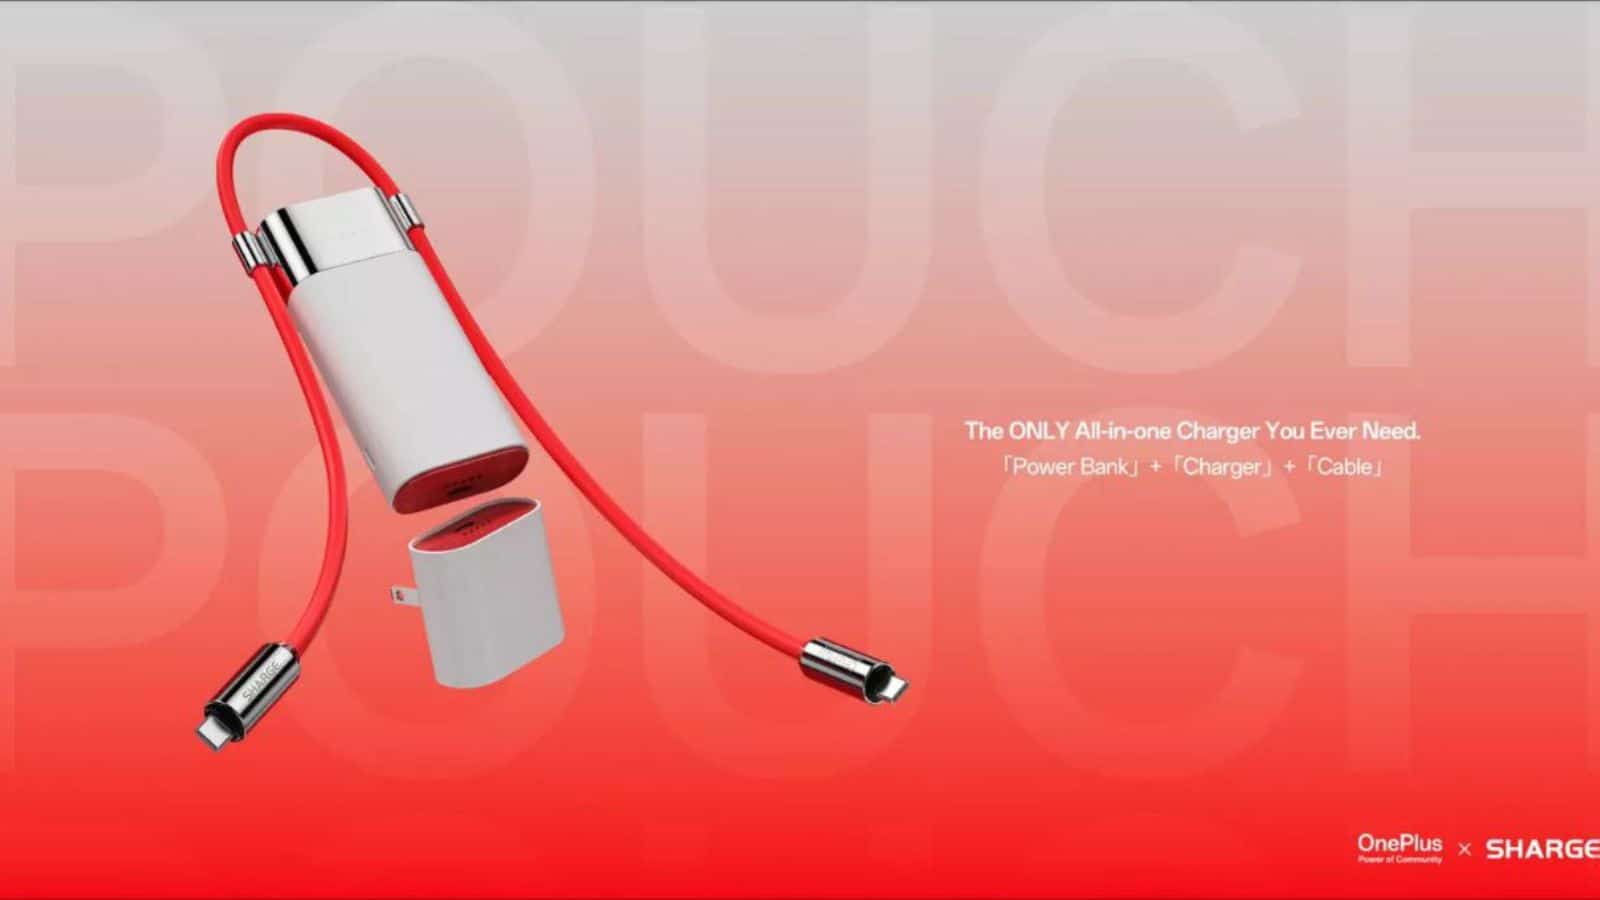 OnePlus e Sharge lanciano Pouch Power Bank con portabilità Premium